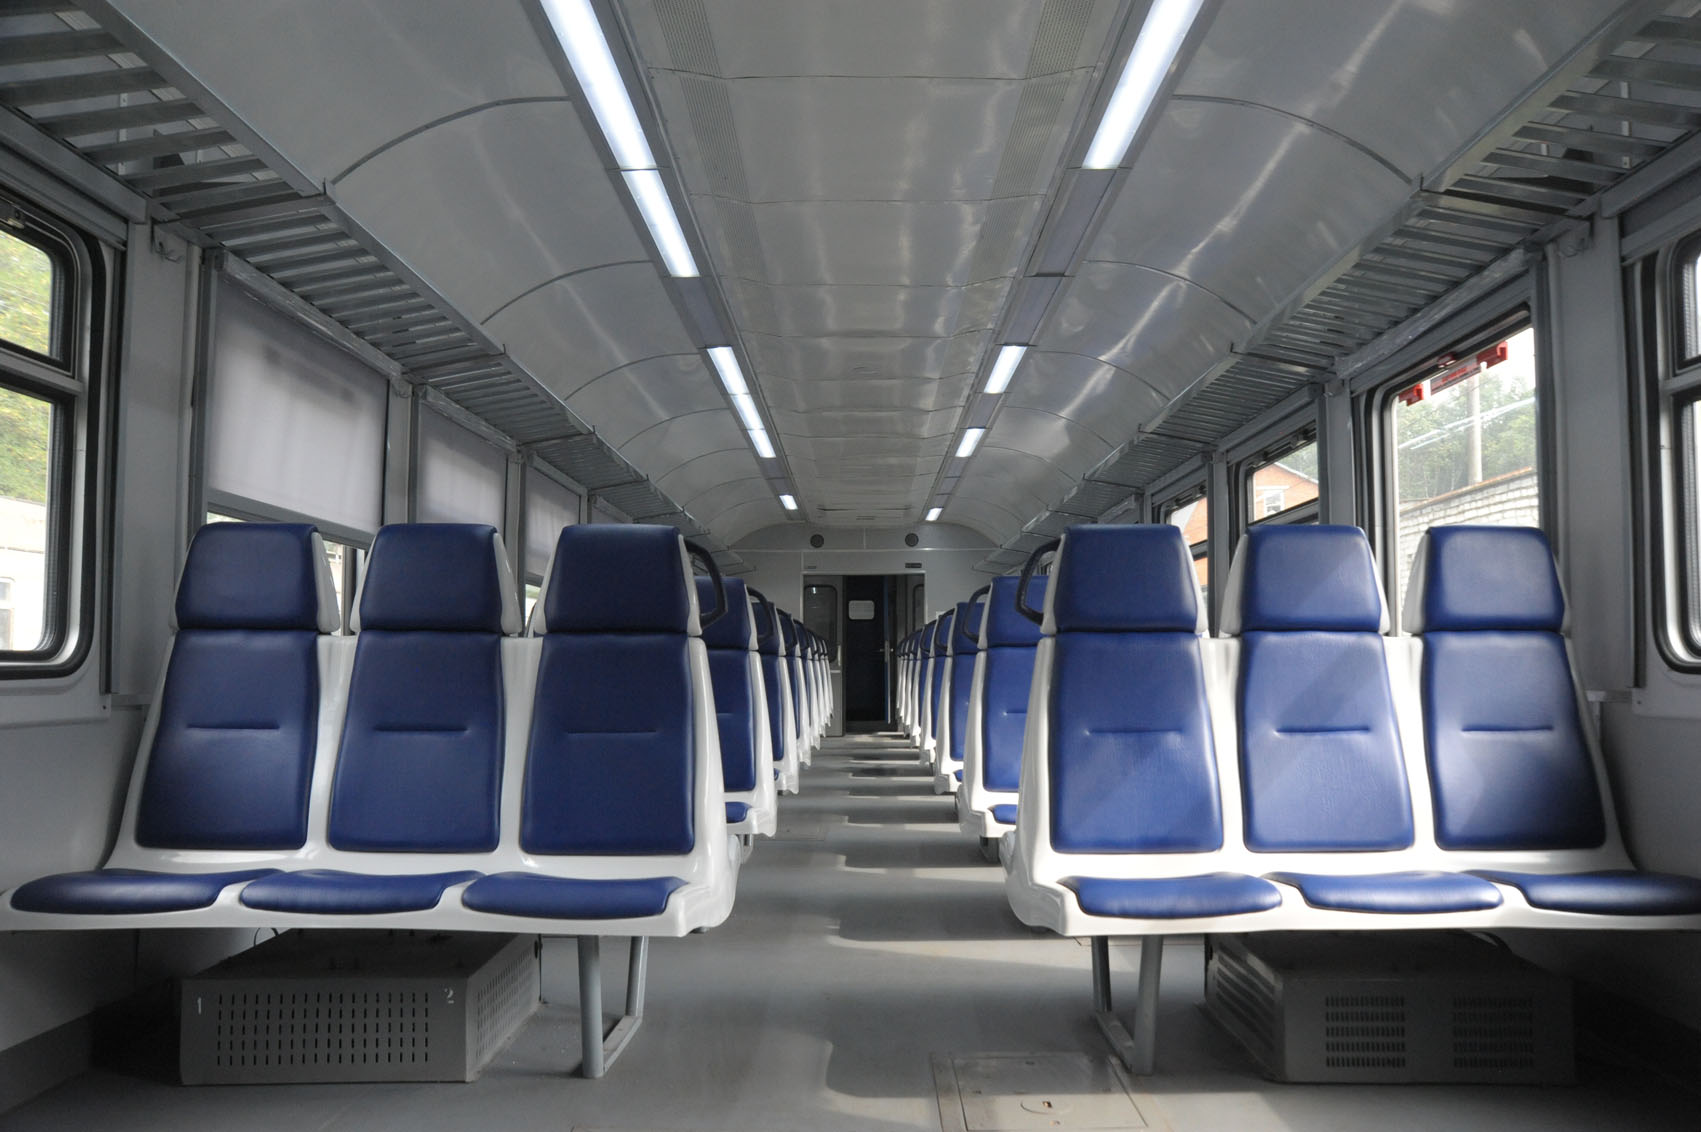 Новина - Події - М'які крісла та сонцезахисні ролети: львівська залізниця показала потяг, відремонтований за 30 мільйонів